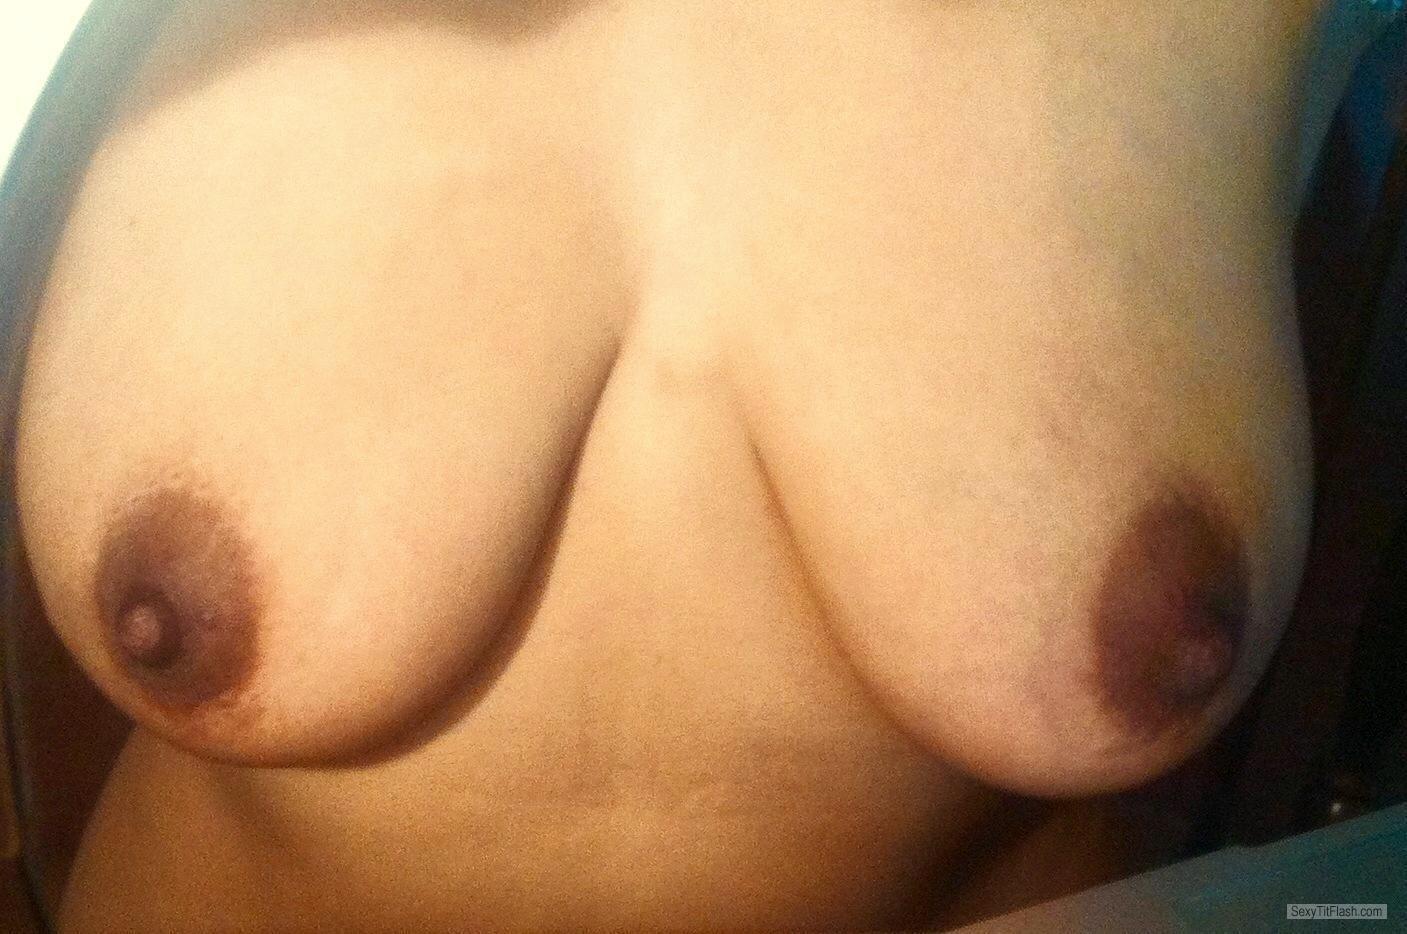 Tit Flash: My Big Tits (Selfie) - Sexy Latina from United Kingdom